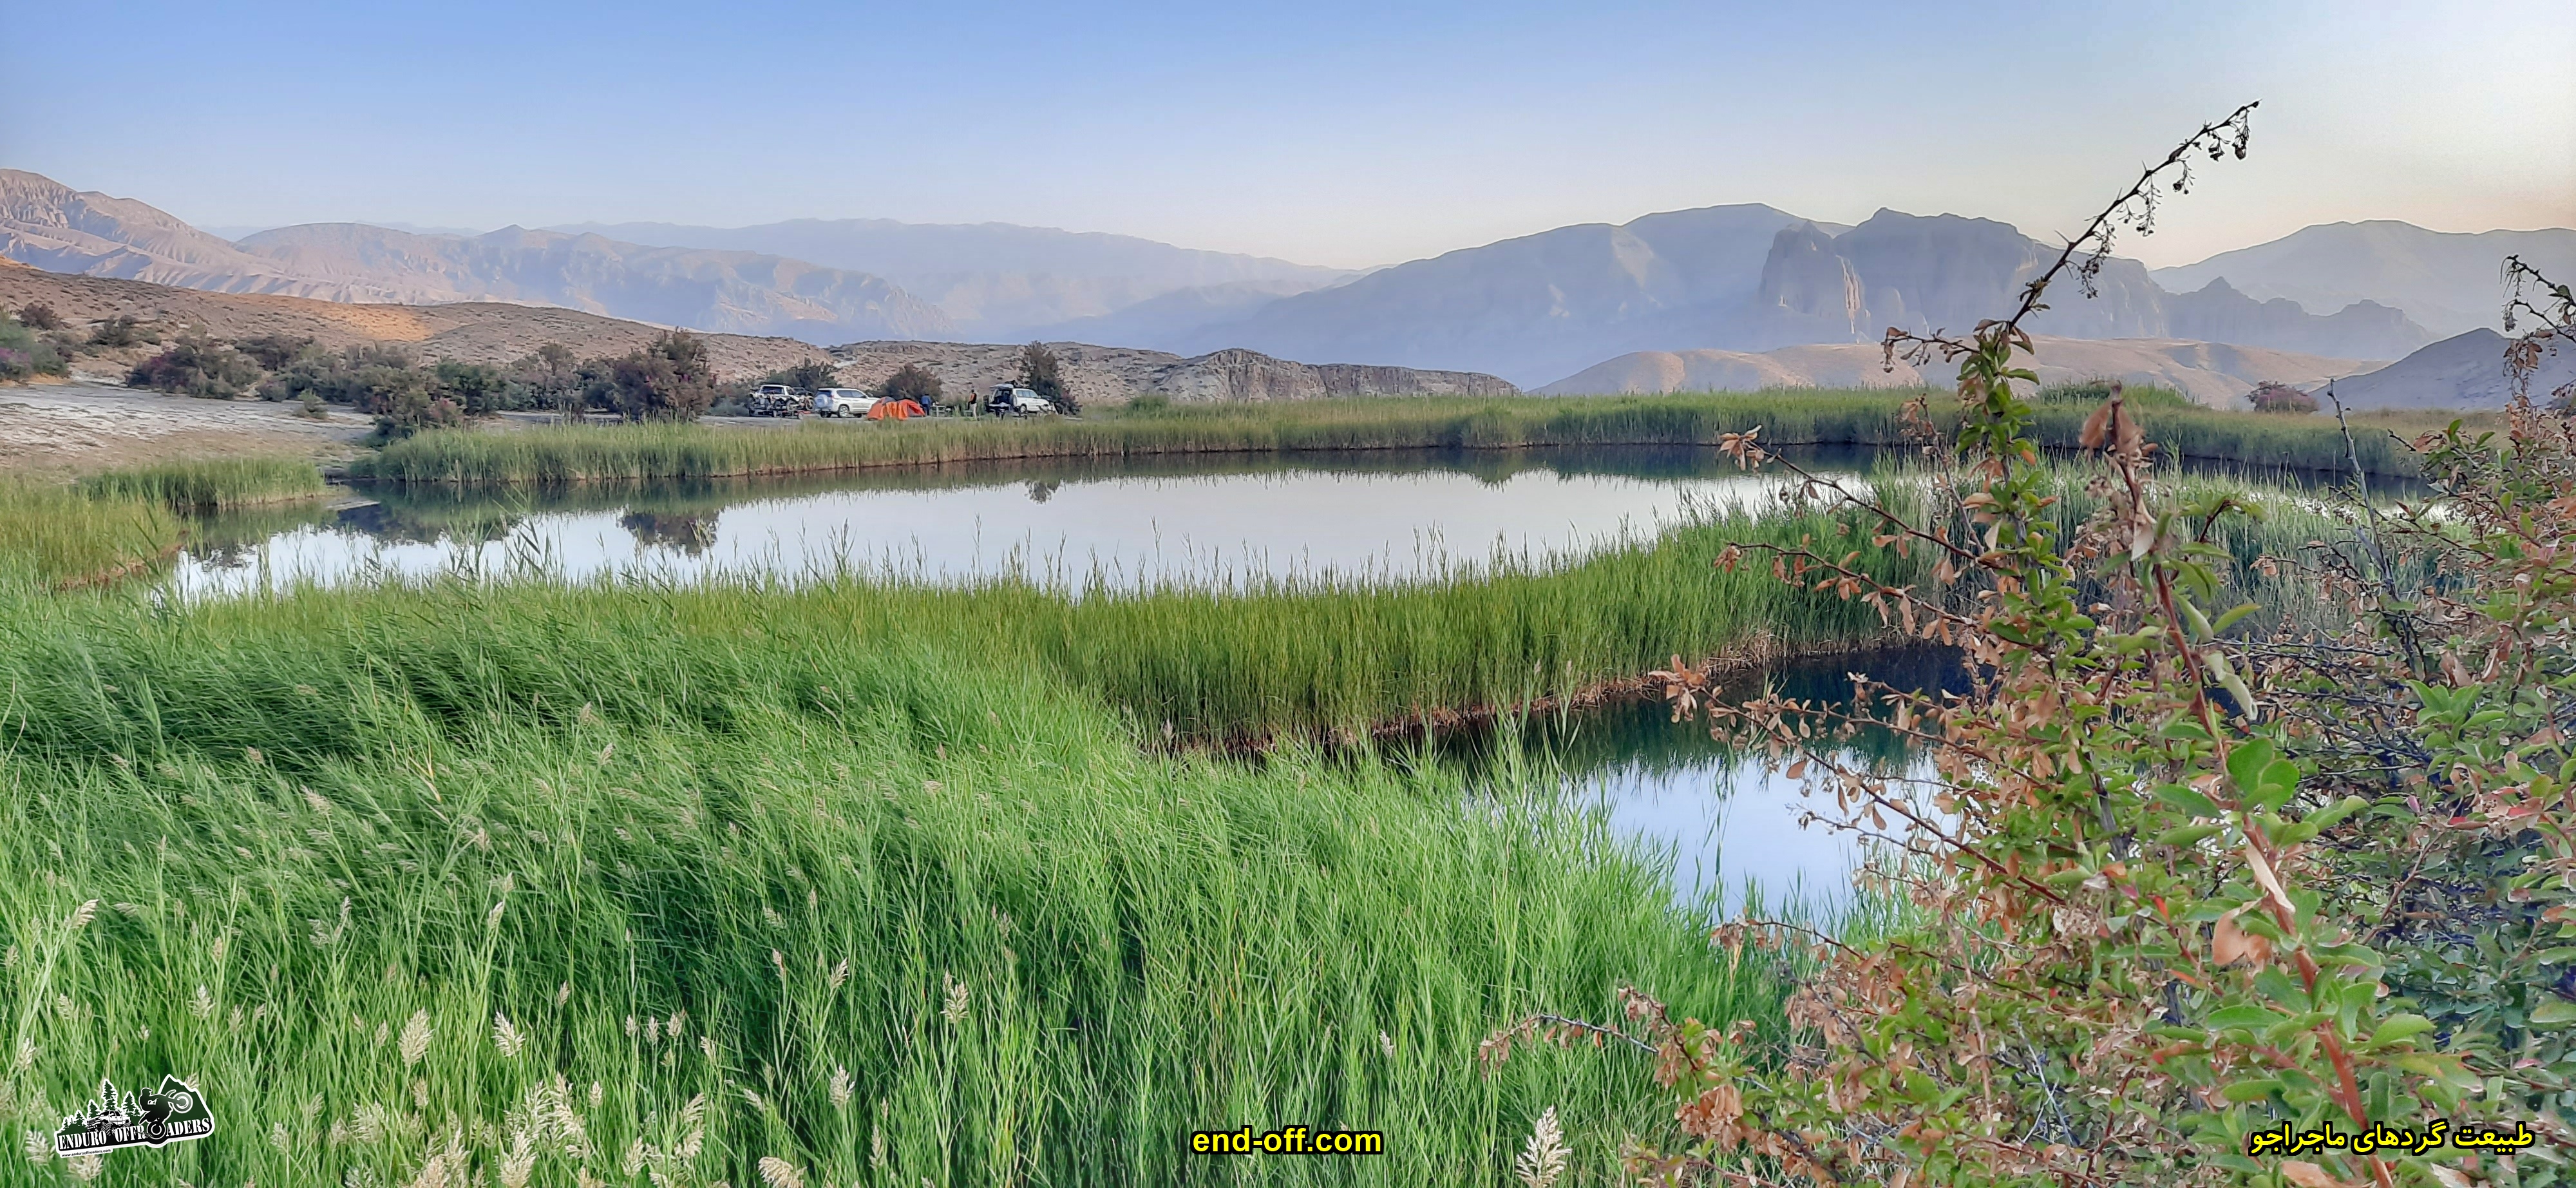 دریاچه آهنک Ahanak - تابستان 1399 2020